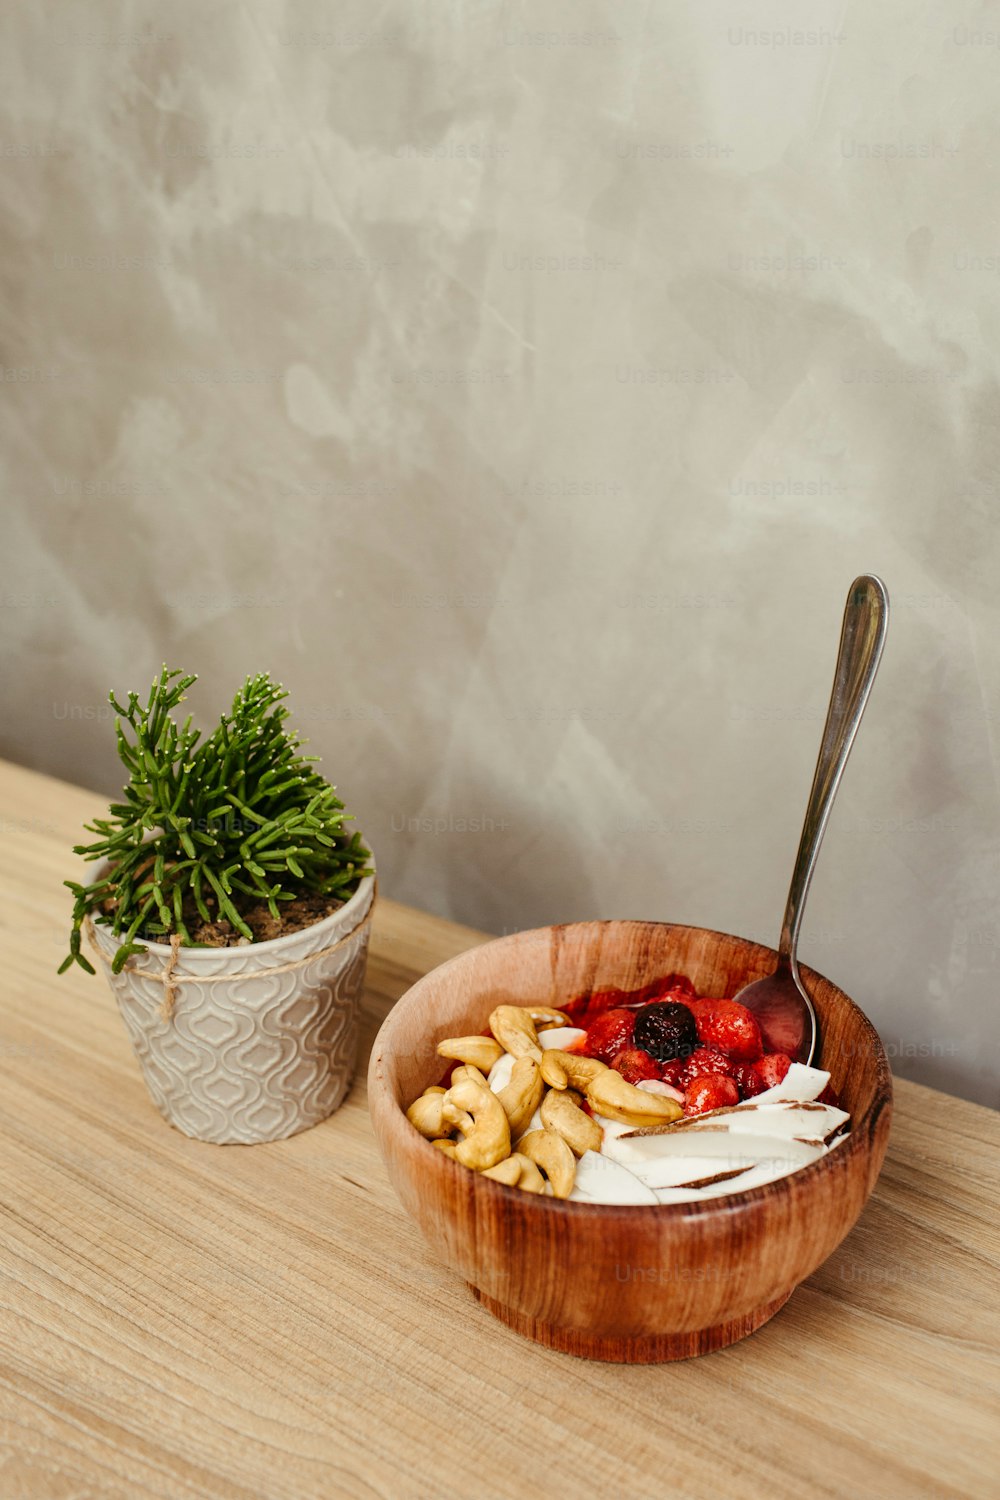 un tazón de comida con una cuchara junto a una planta en maceta